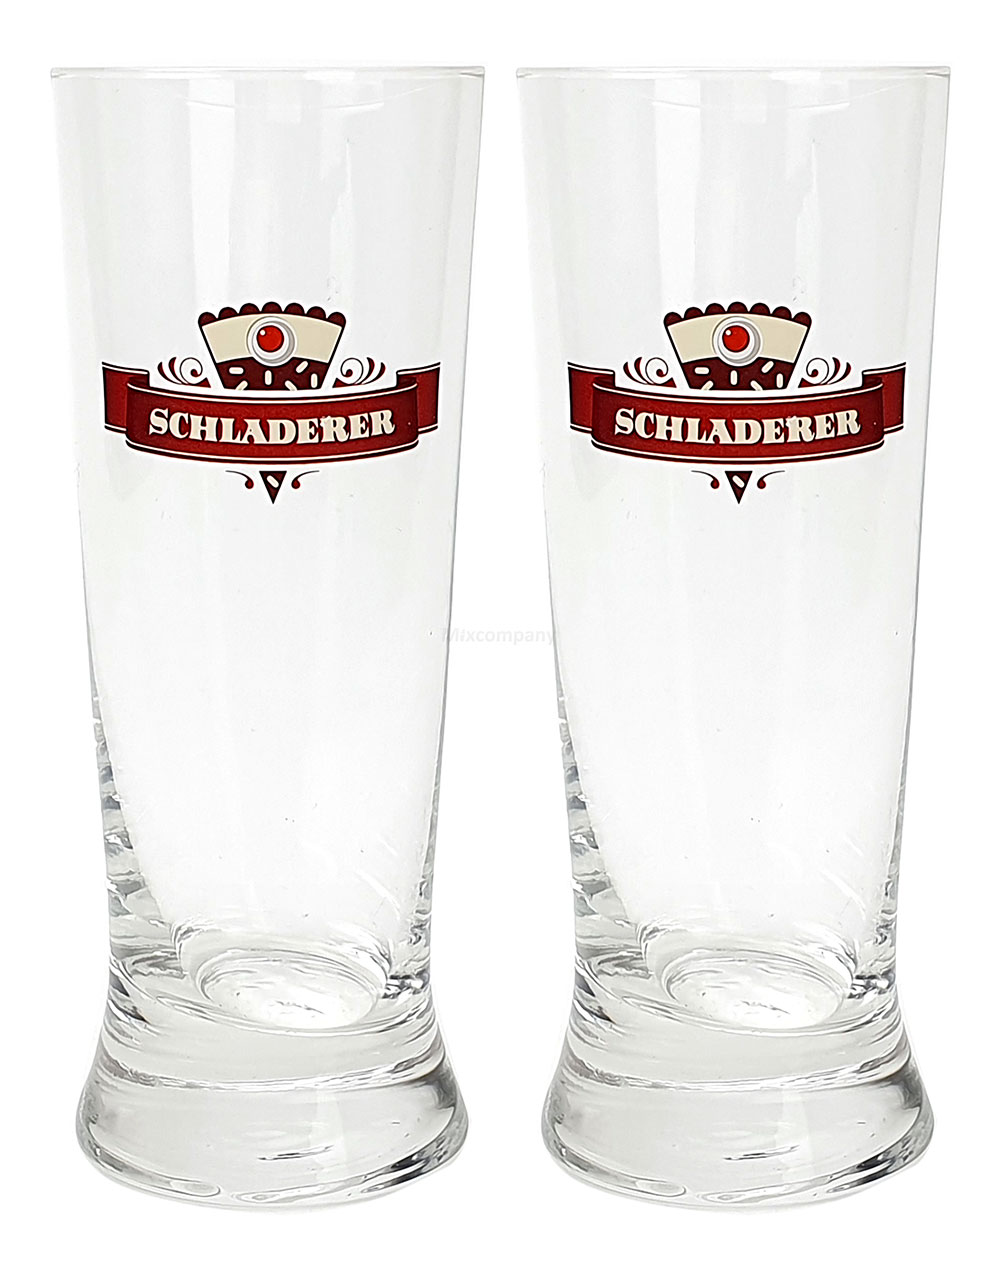 Schladerer Kirschwasser, Szene Becher, Longdrinkglas - 2er Set Glas / Gläser - 2x Schladerer Glas